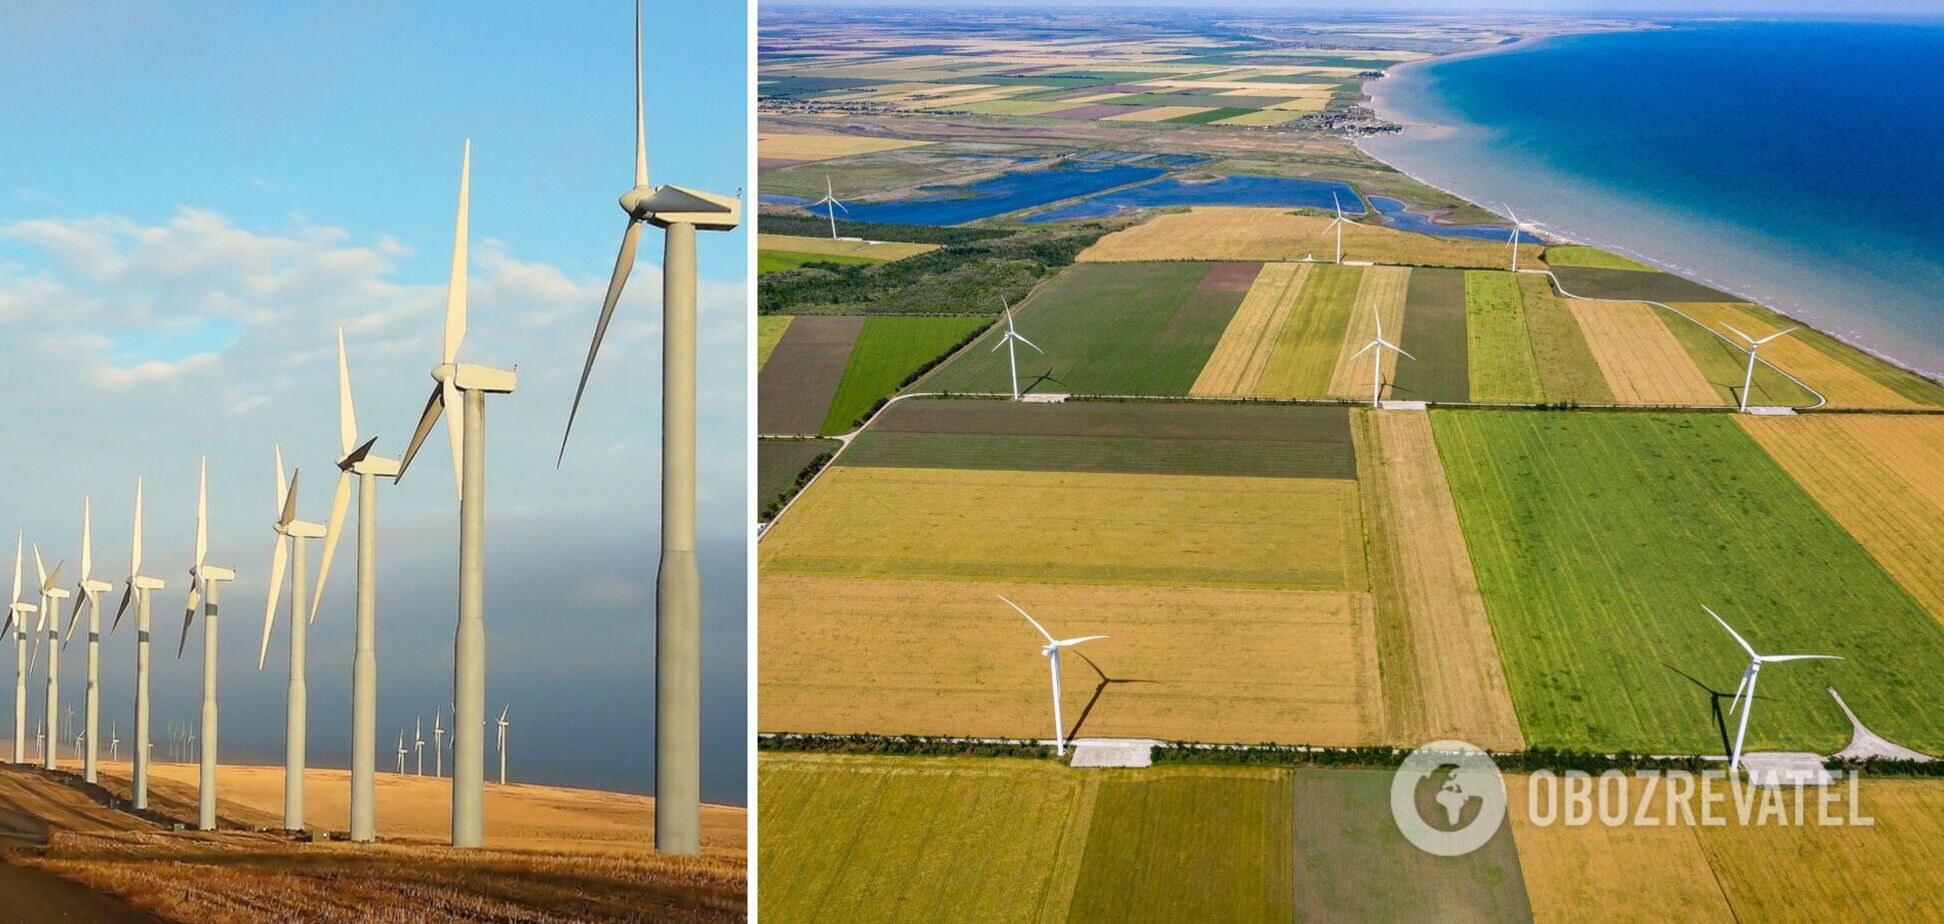 'Укрэнерго' призвали выплатить долги 'зеленым' электростанциям из целевых европейских средств